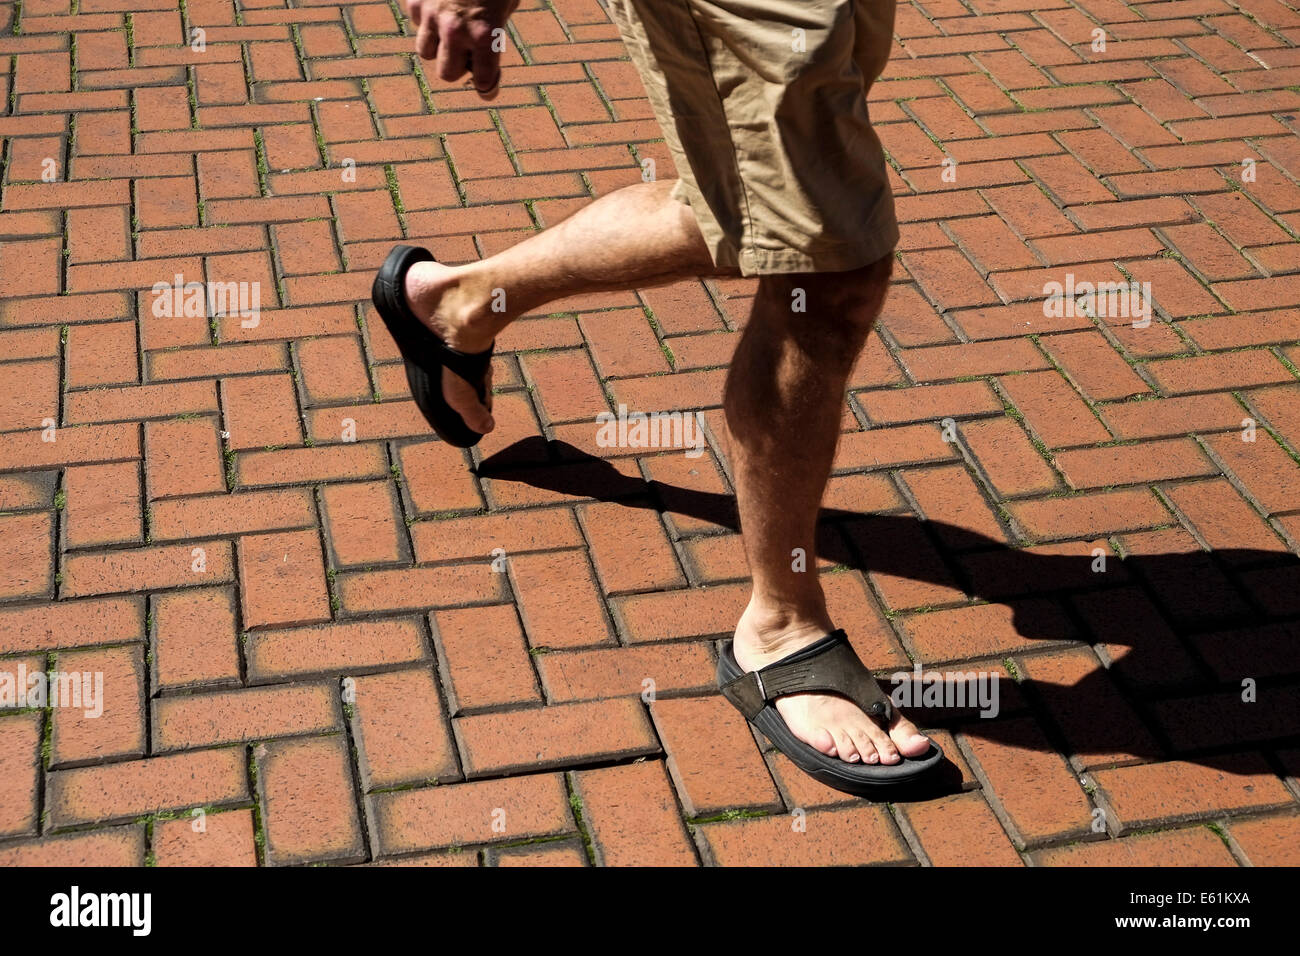 Une personne en short et sandales marcher une brique posée. étage. Banque D'Images